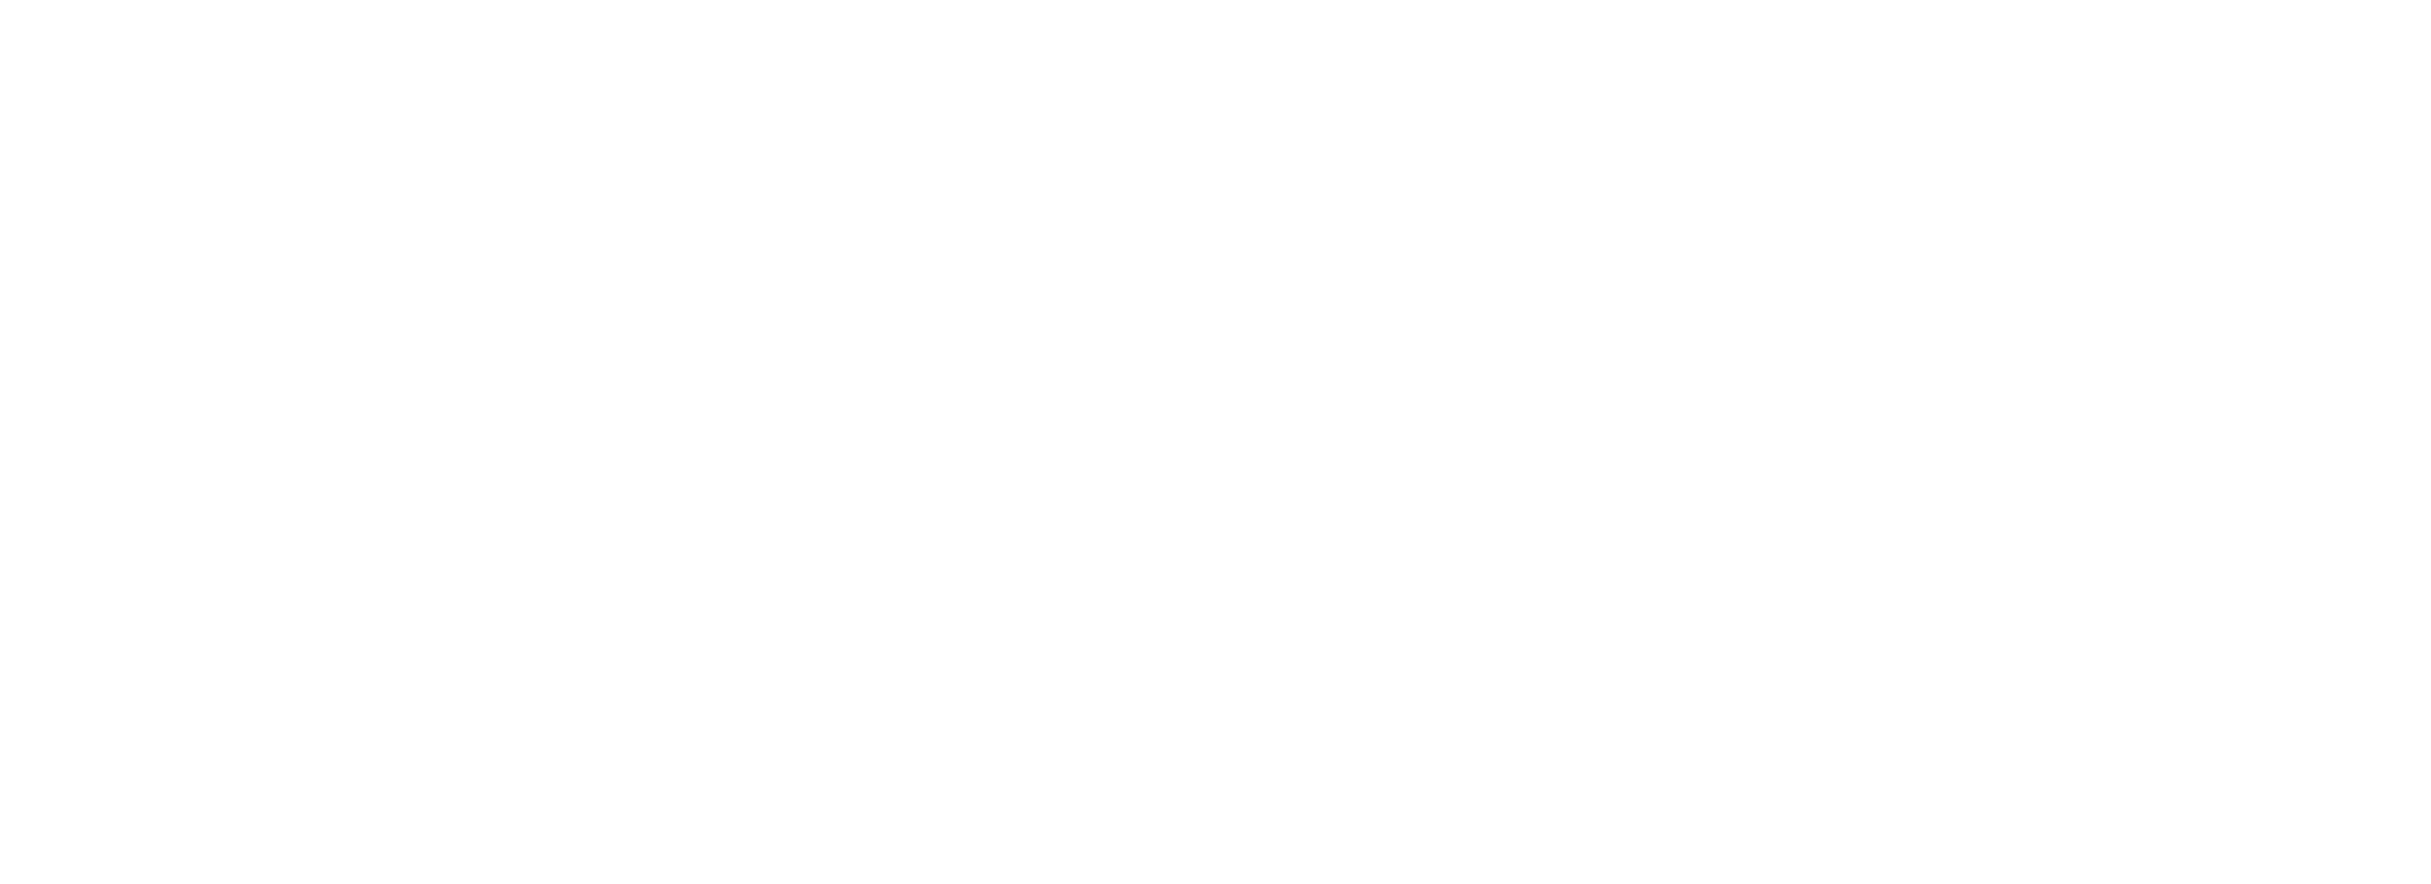 Legal Gaming